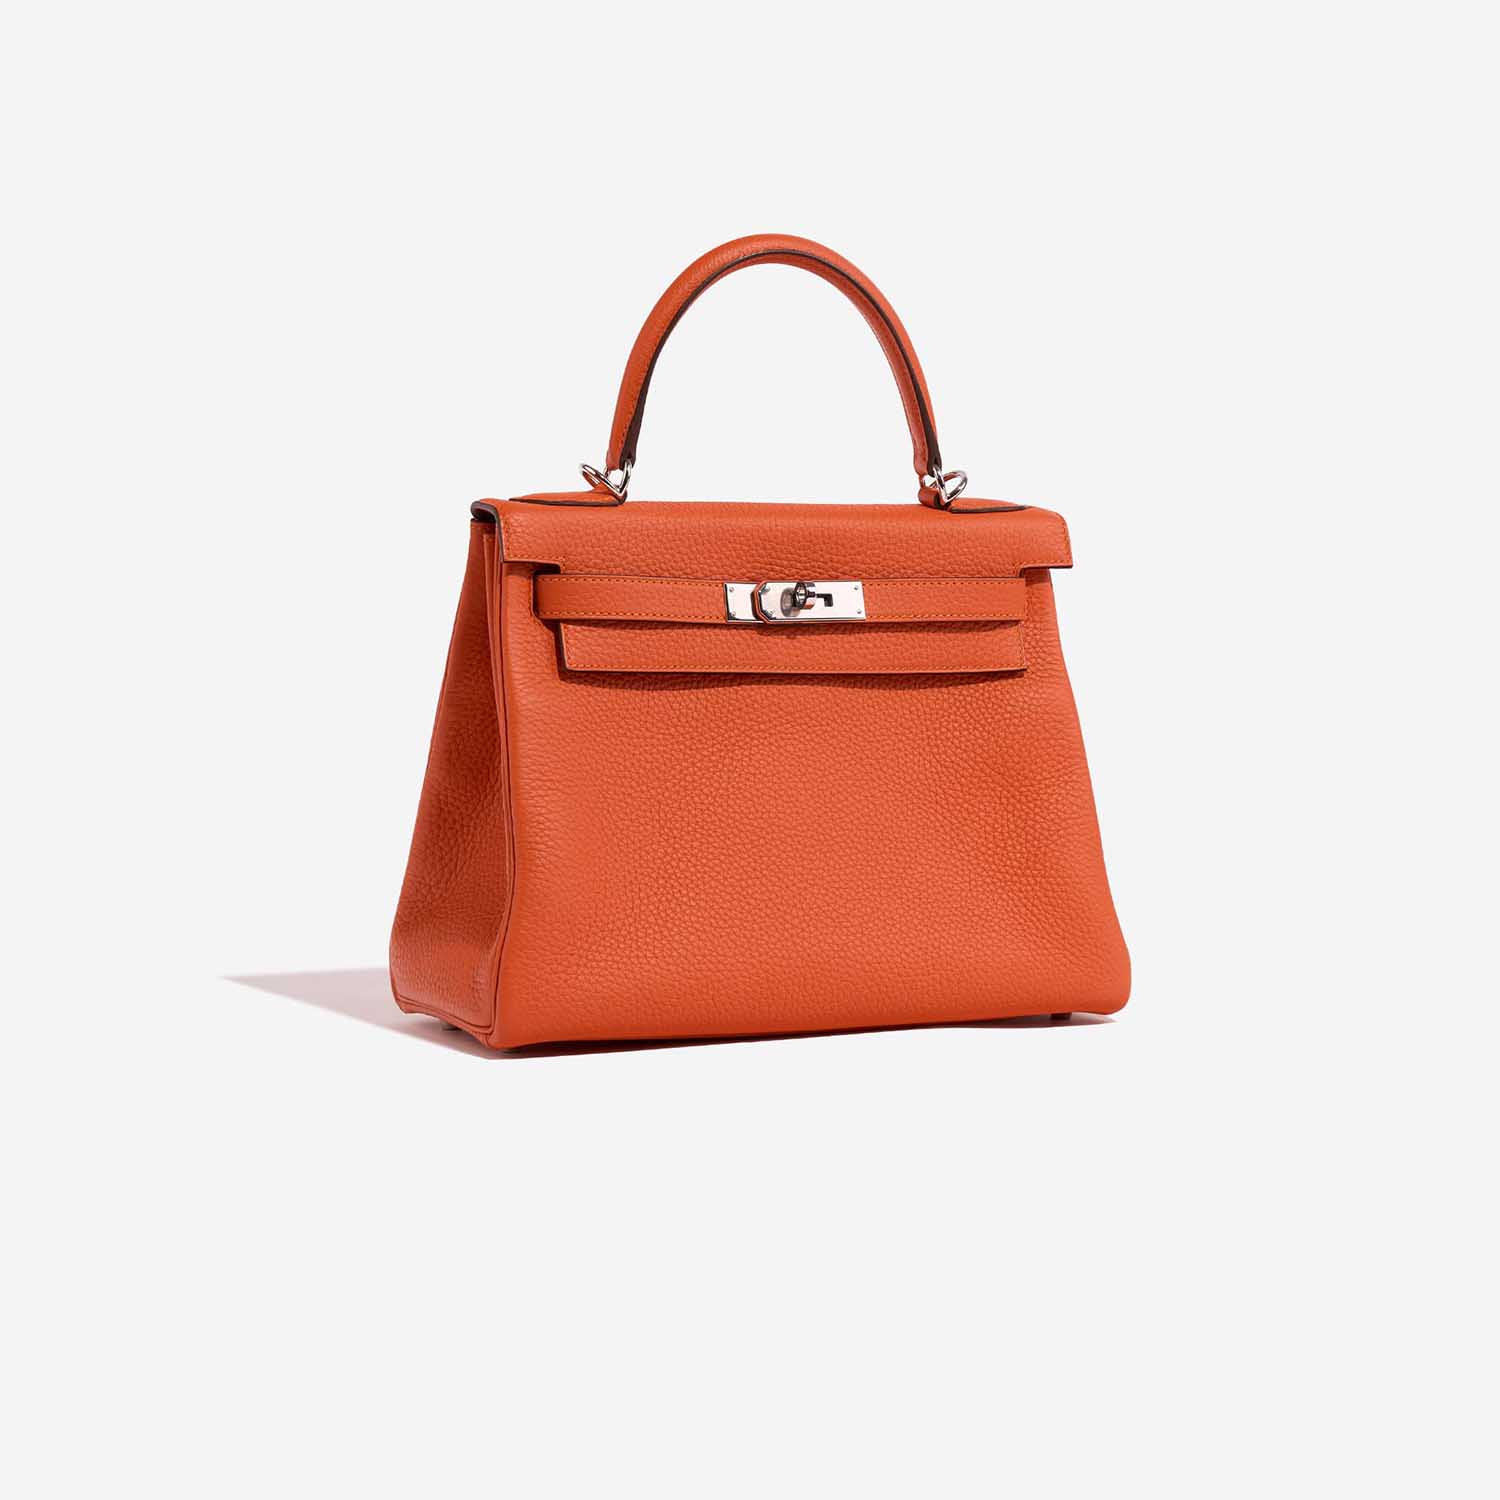 Hermès Kelly 28 Feu Side Front | Verkaufen Sie Ihre Designer-Tasche auf Saclab.com